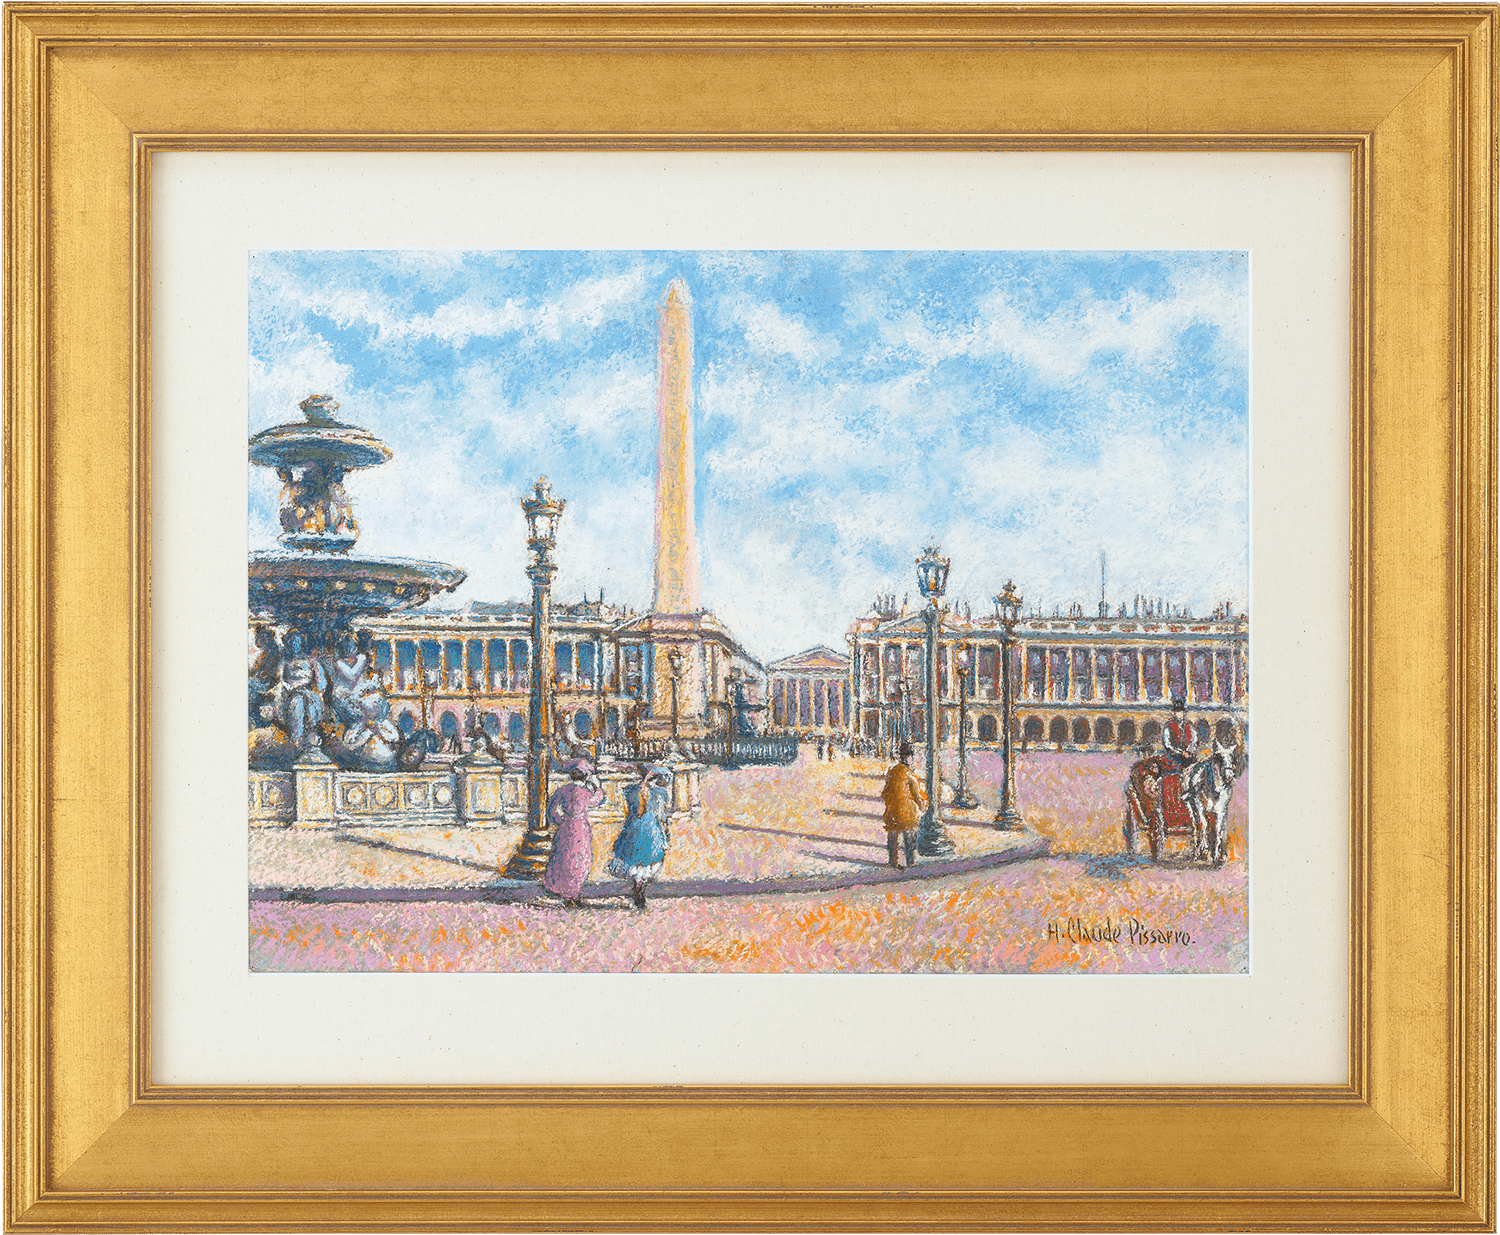 La Place de la Concorde, Paris by H. Claude Pissarro